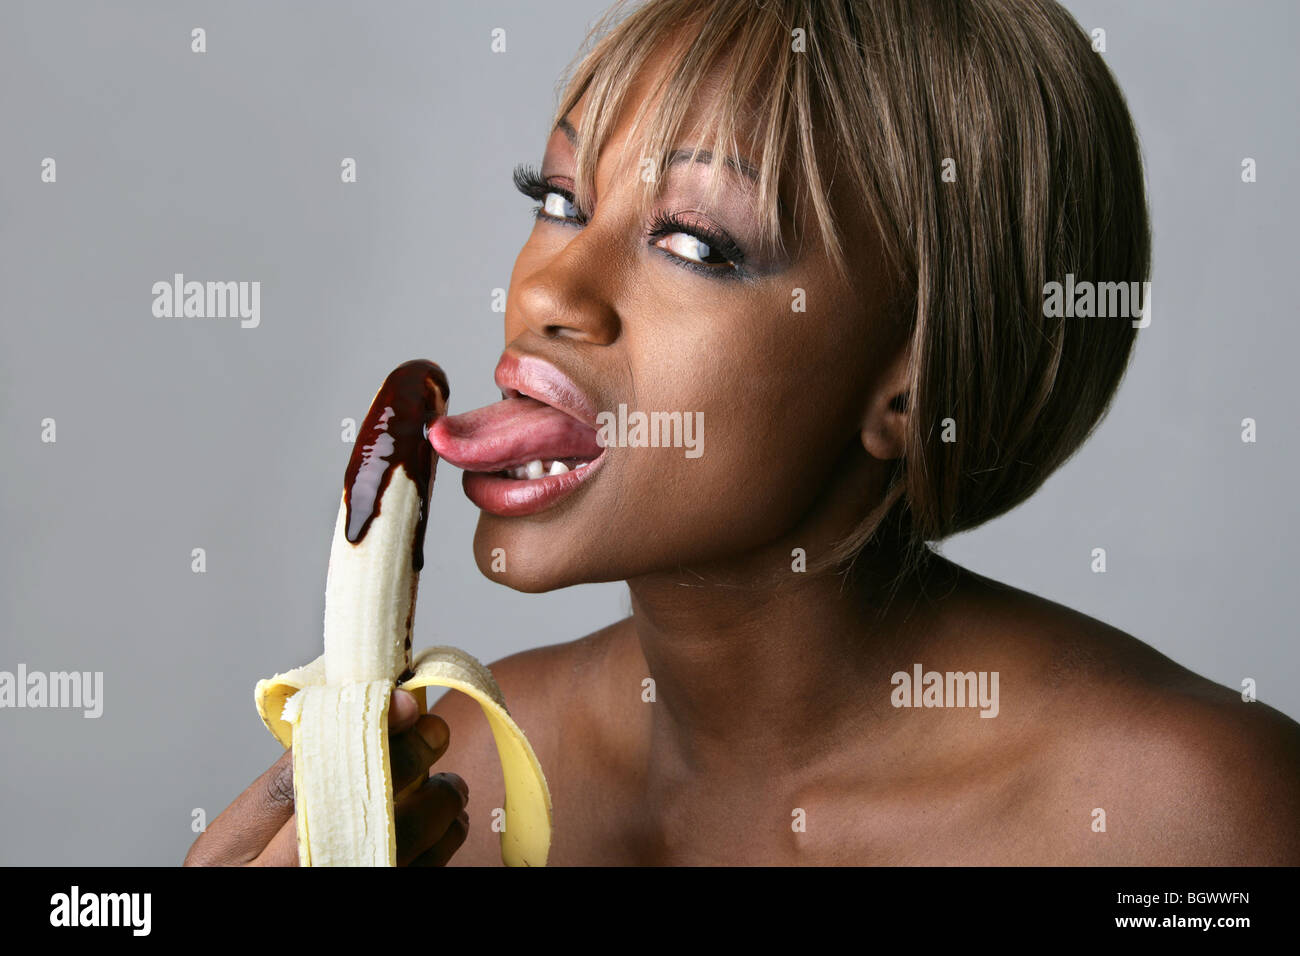 licking banana